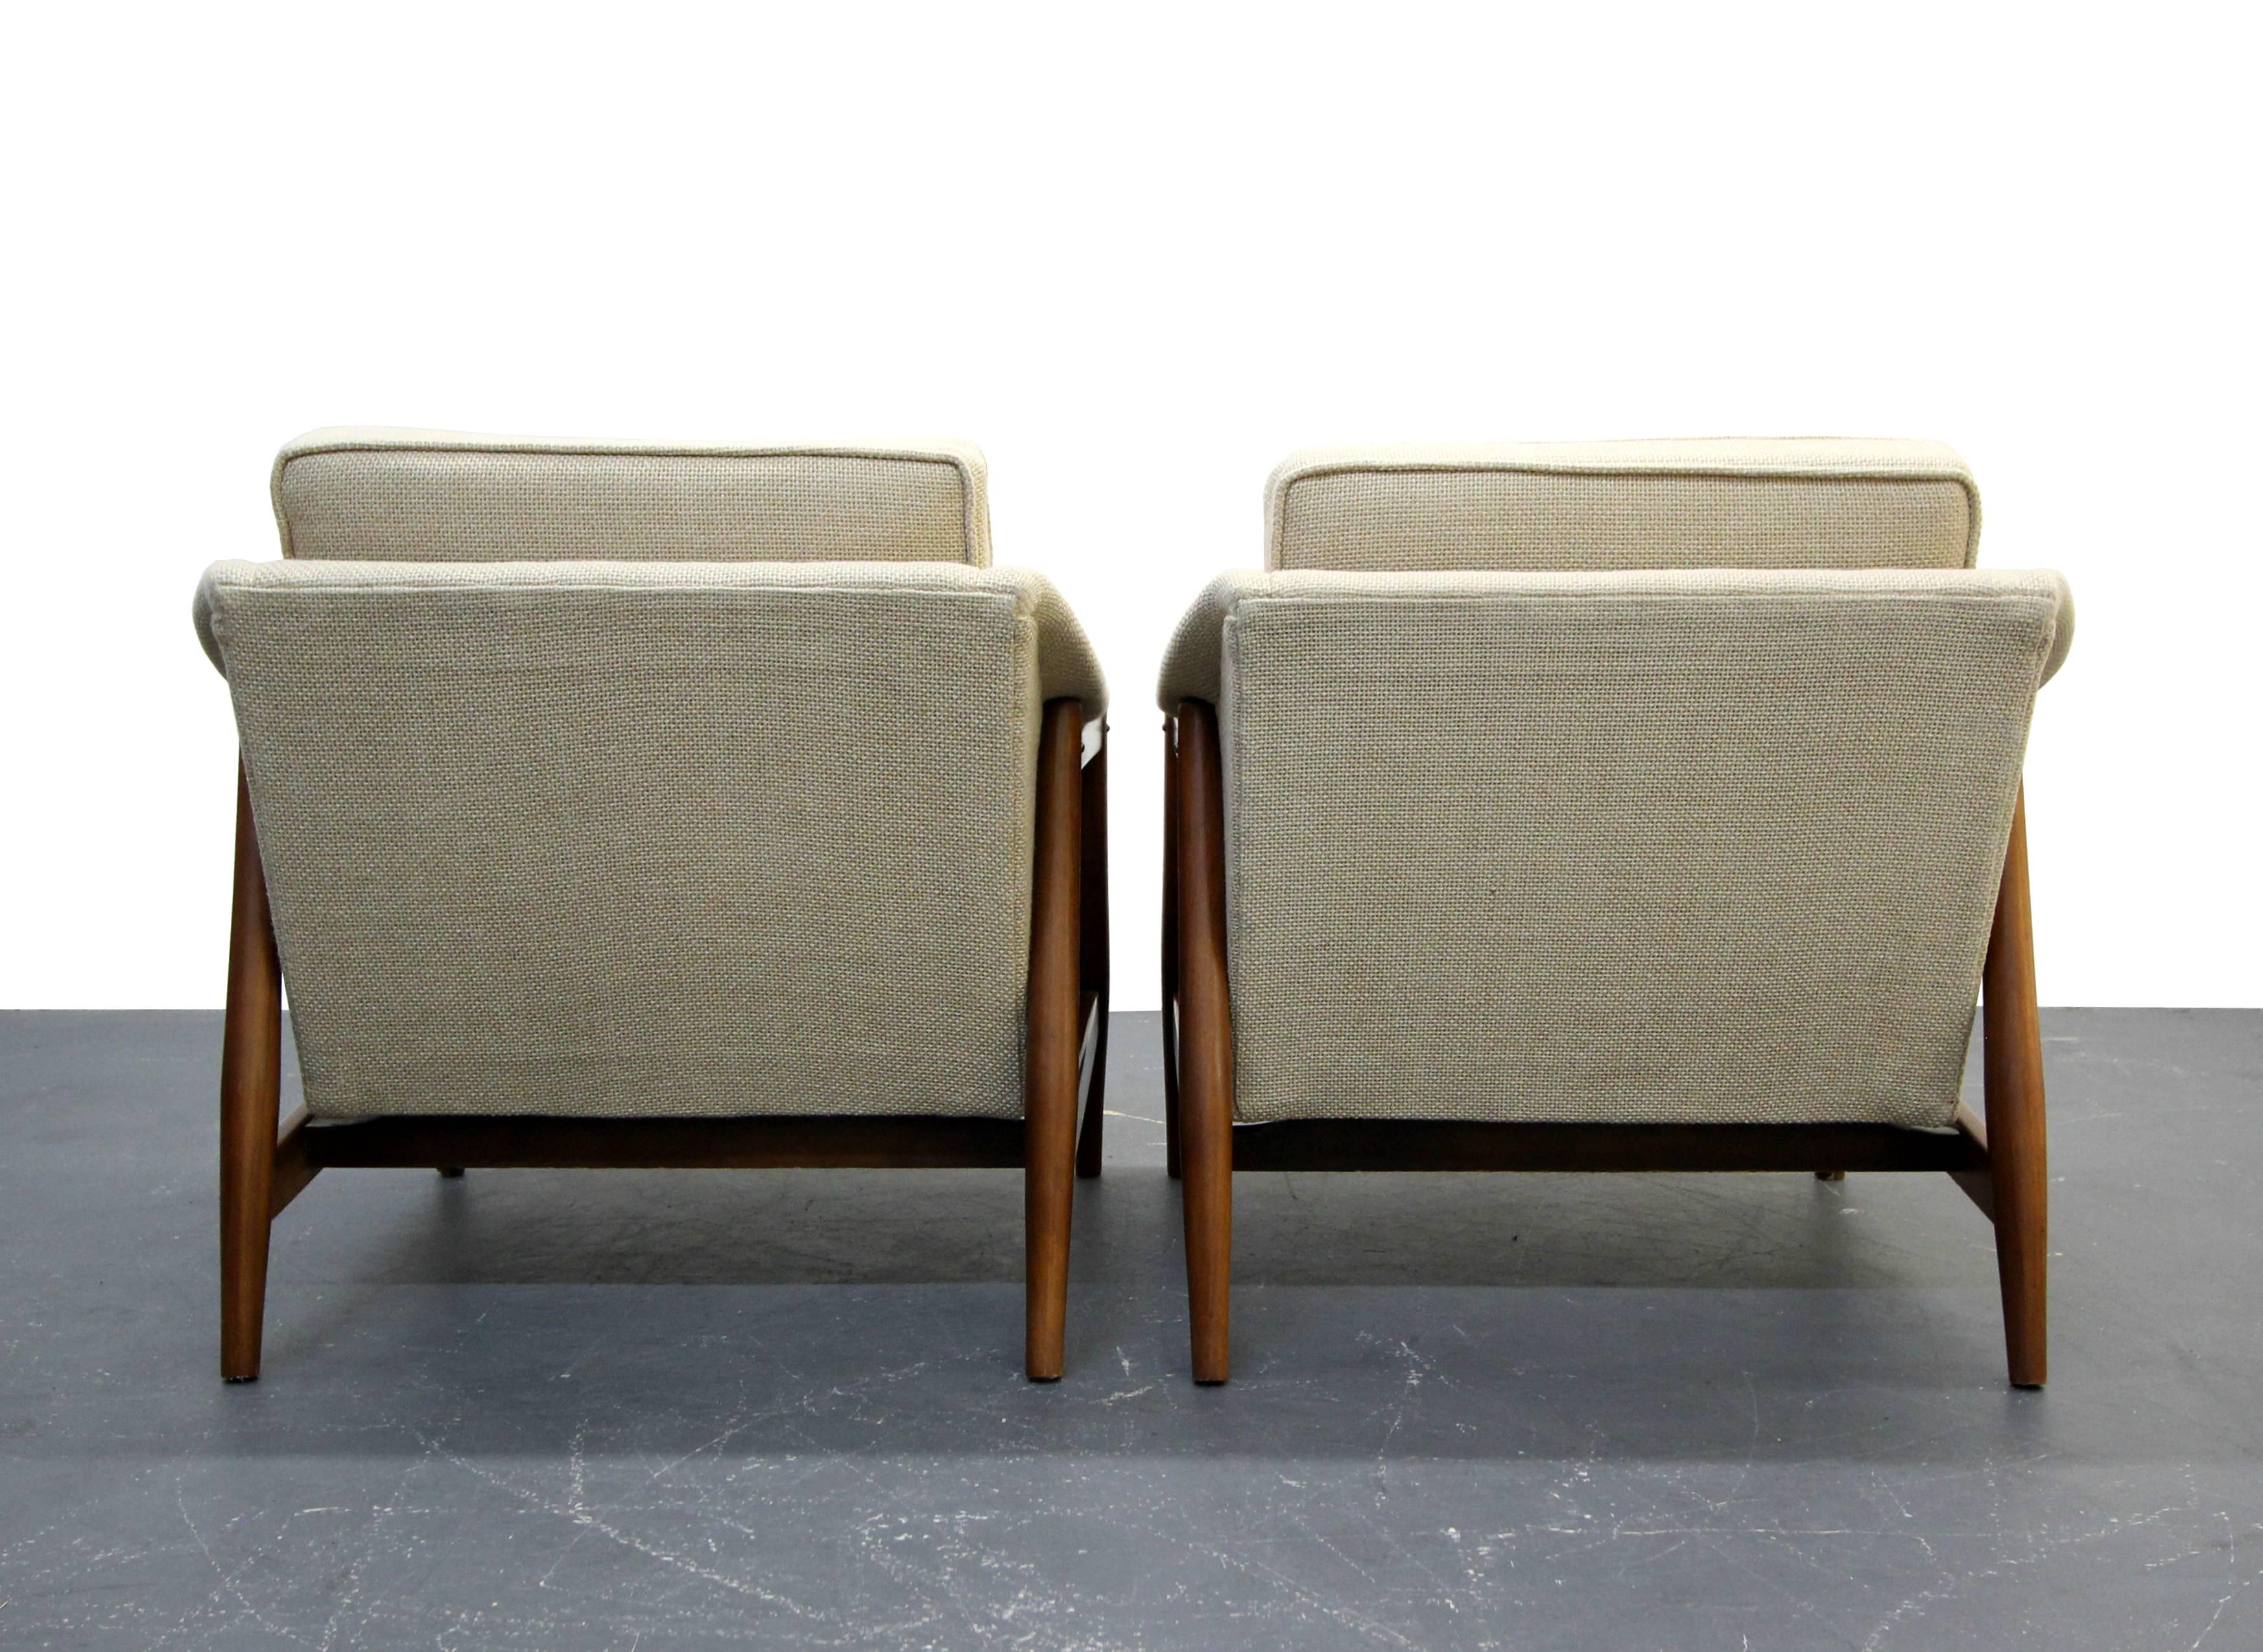 Pair of Danish Mid-Century Modern Teak Lounge Chairs 1